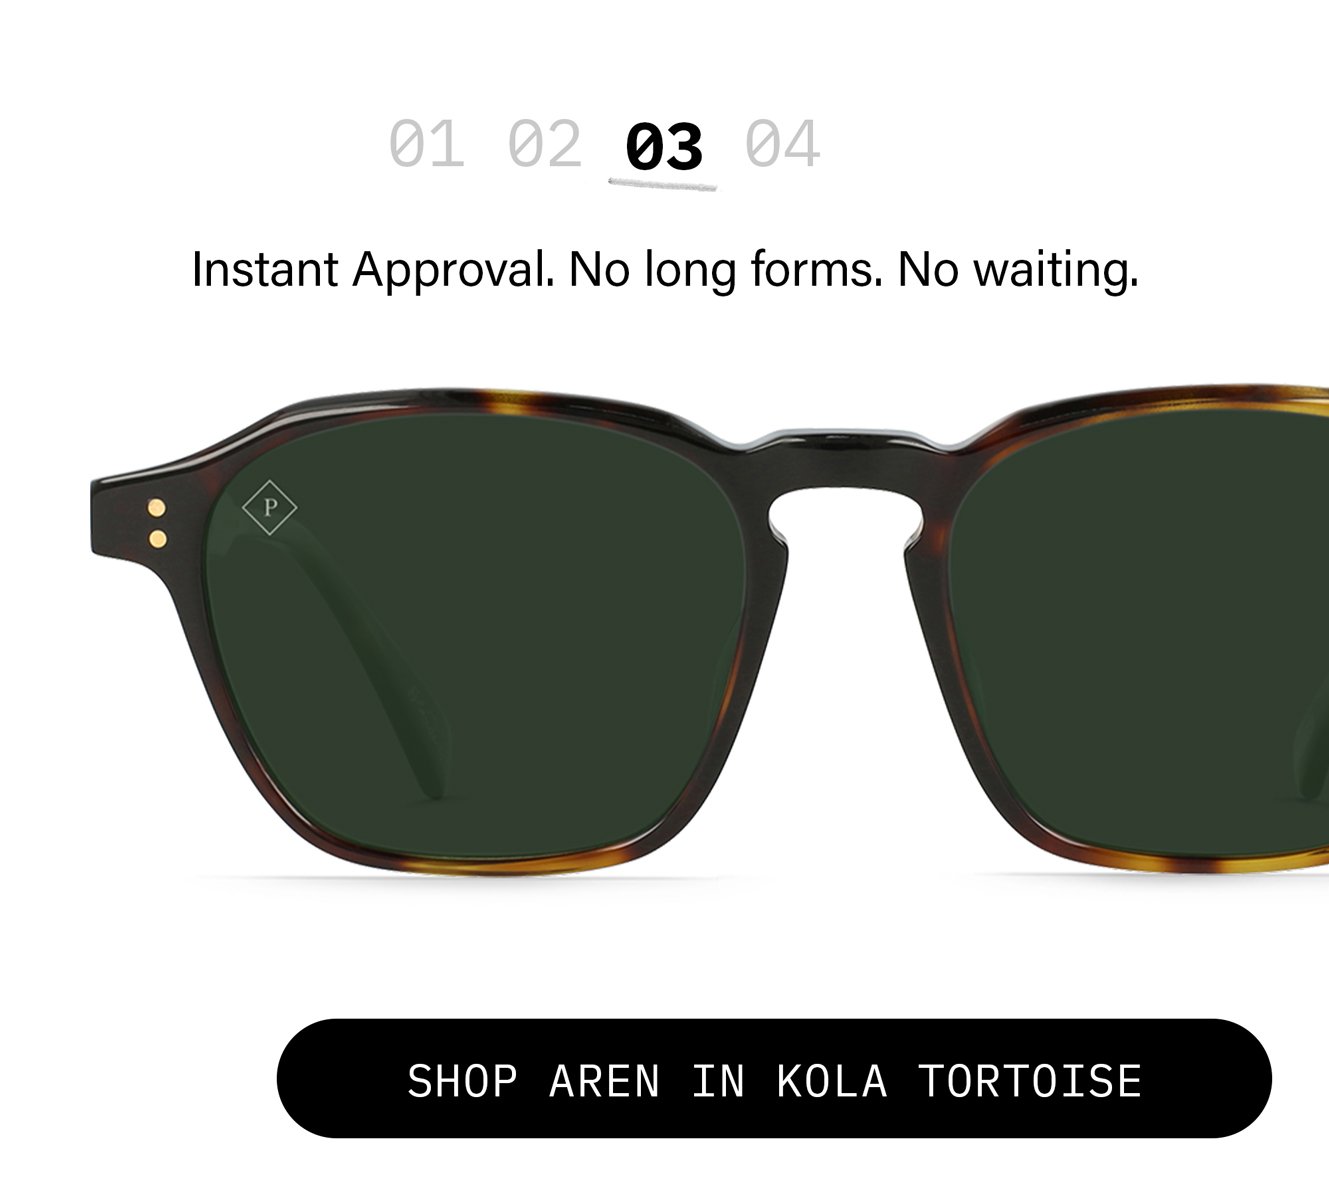 Shop Aren Kola Tortoise